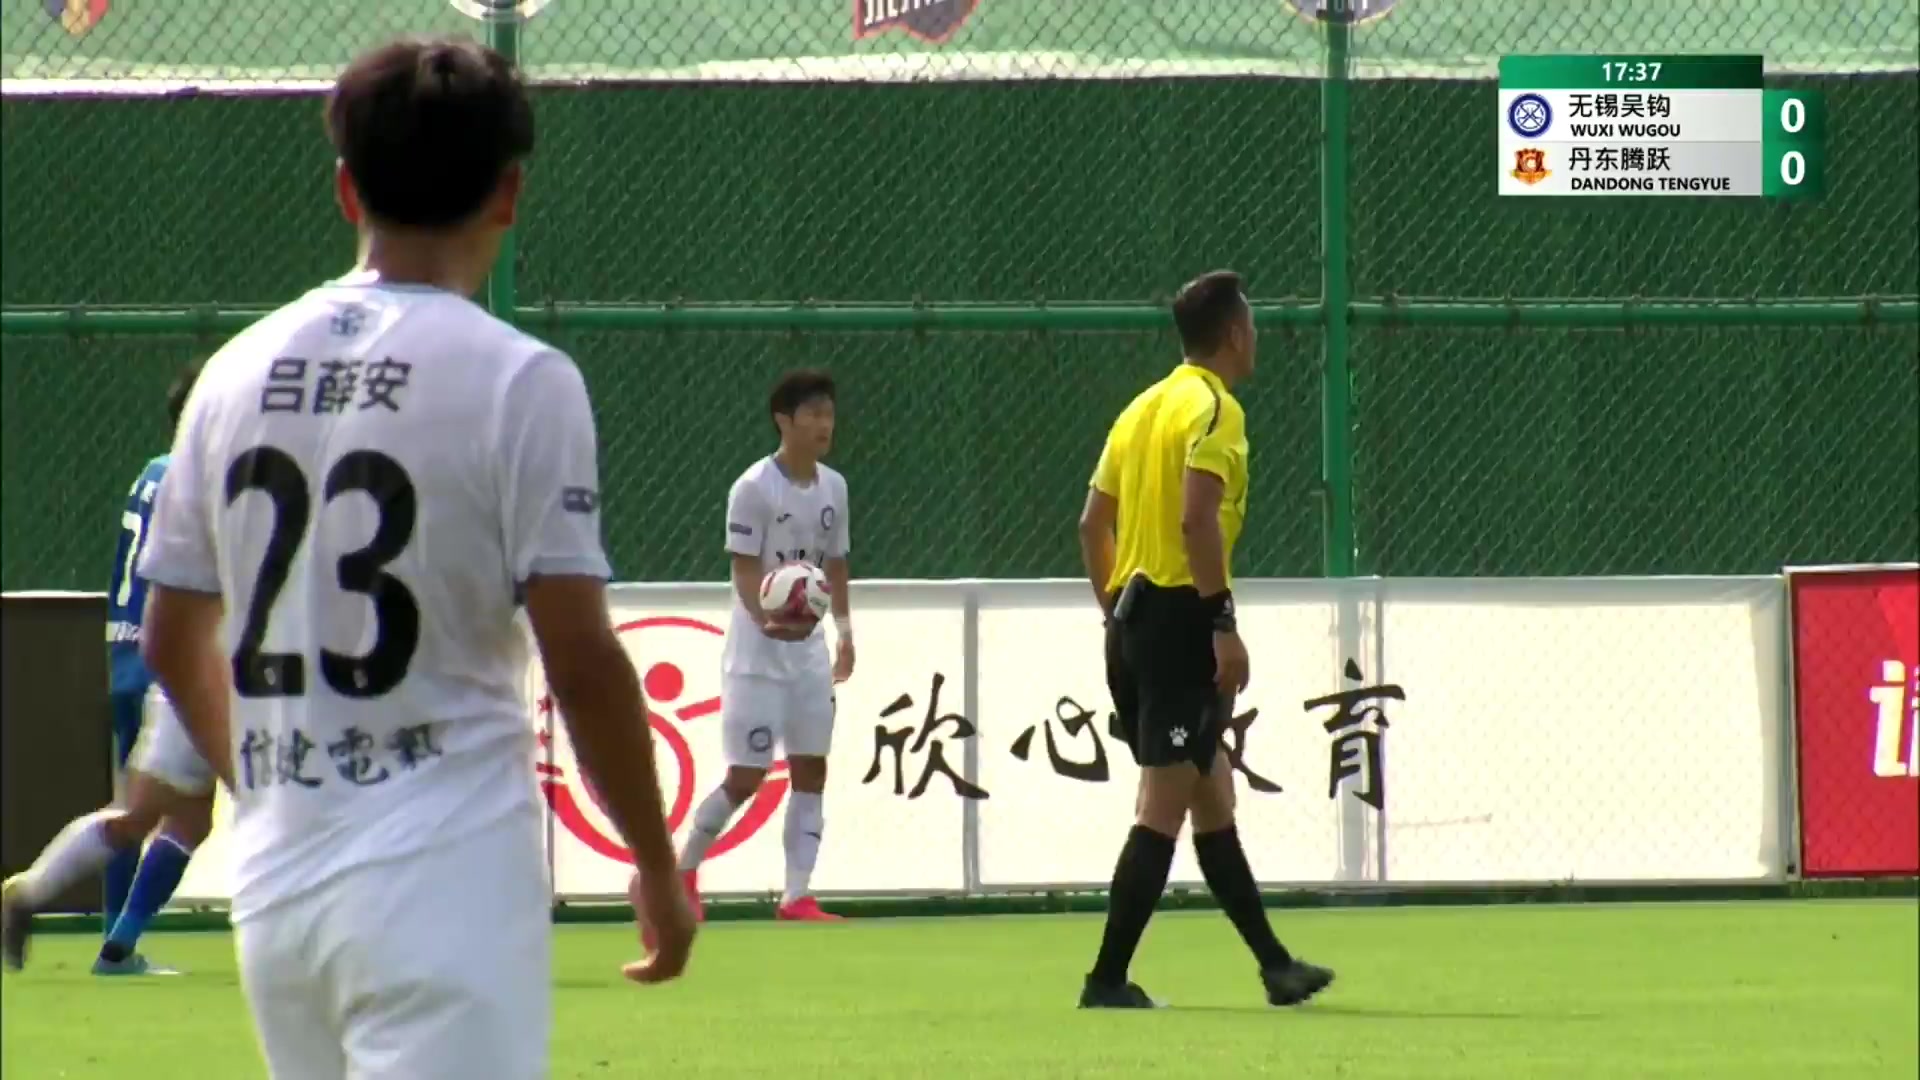 CHA D2 Wuxi Wugou Vs Dantong Tengyue Zhou Bingxu Goal in 17 min, Score 1:0